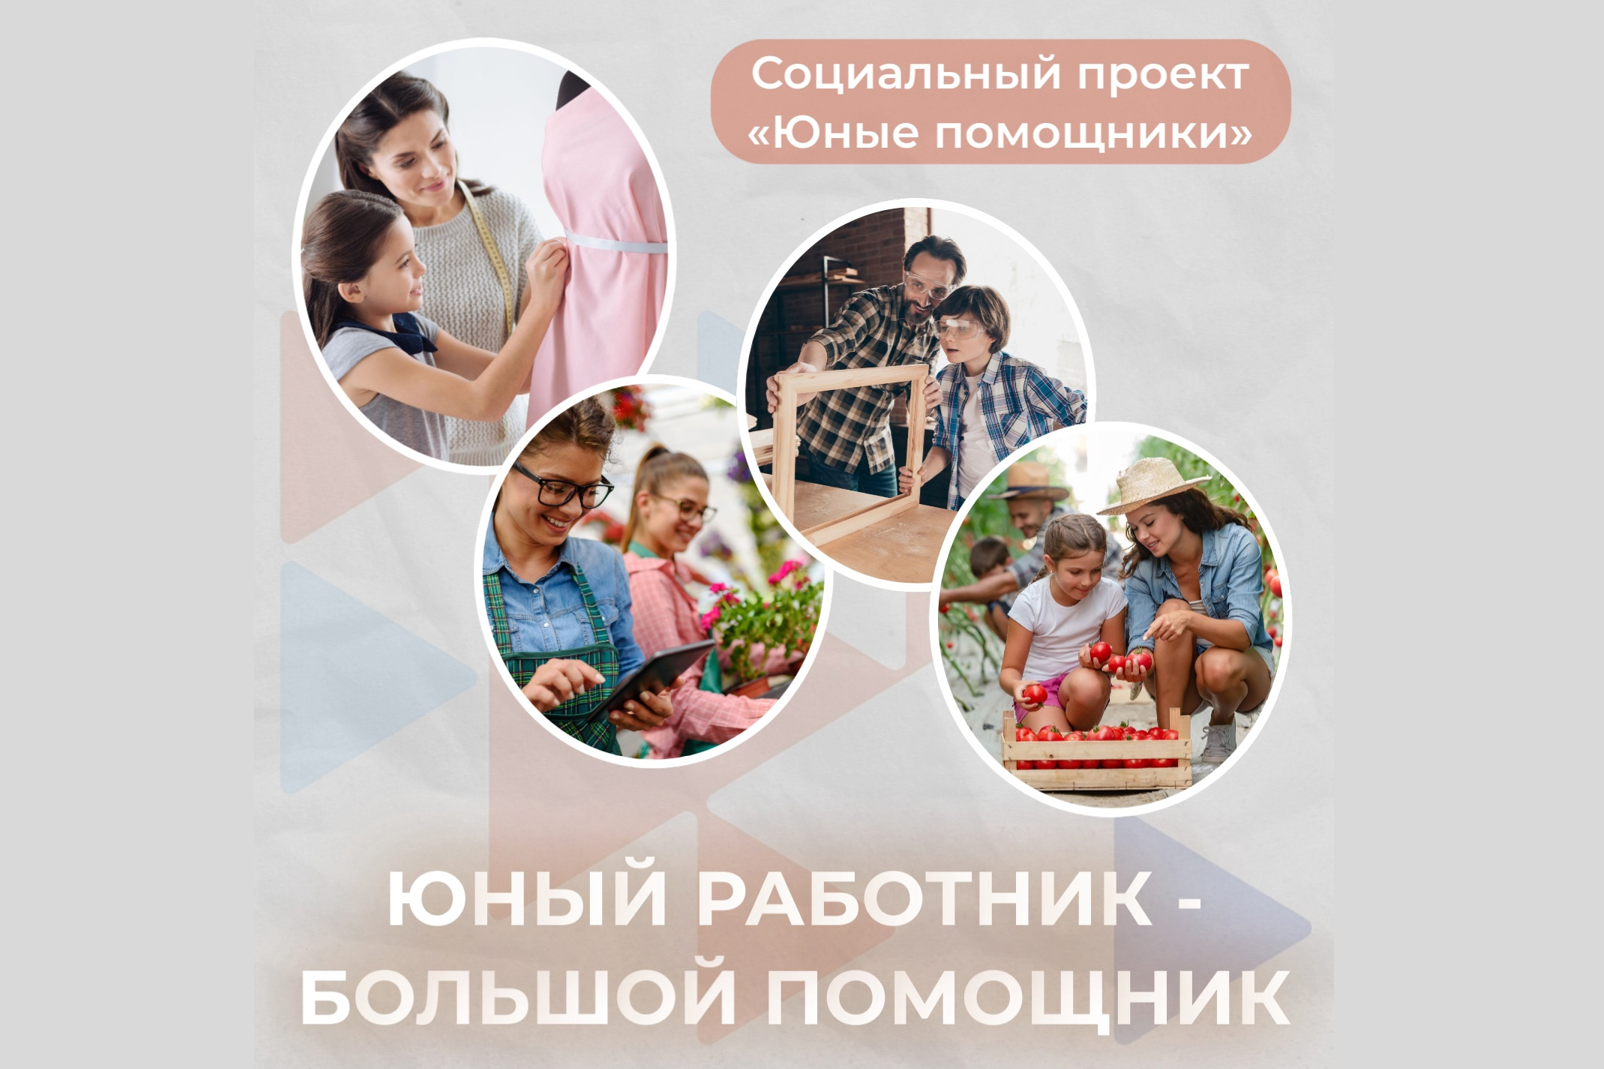 Архангельский областной центр занятости населения вновь запускает социальный проект «Юные помощники»